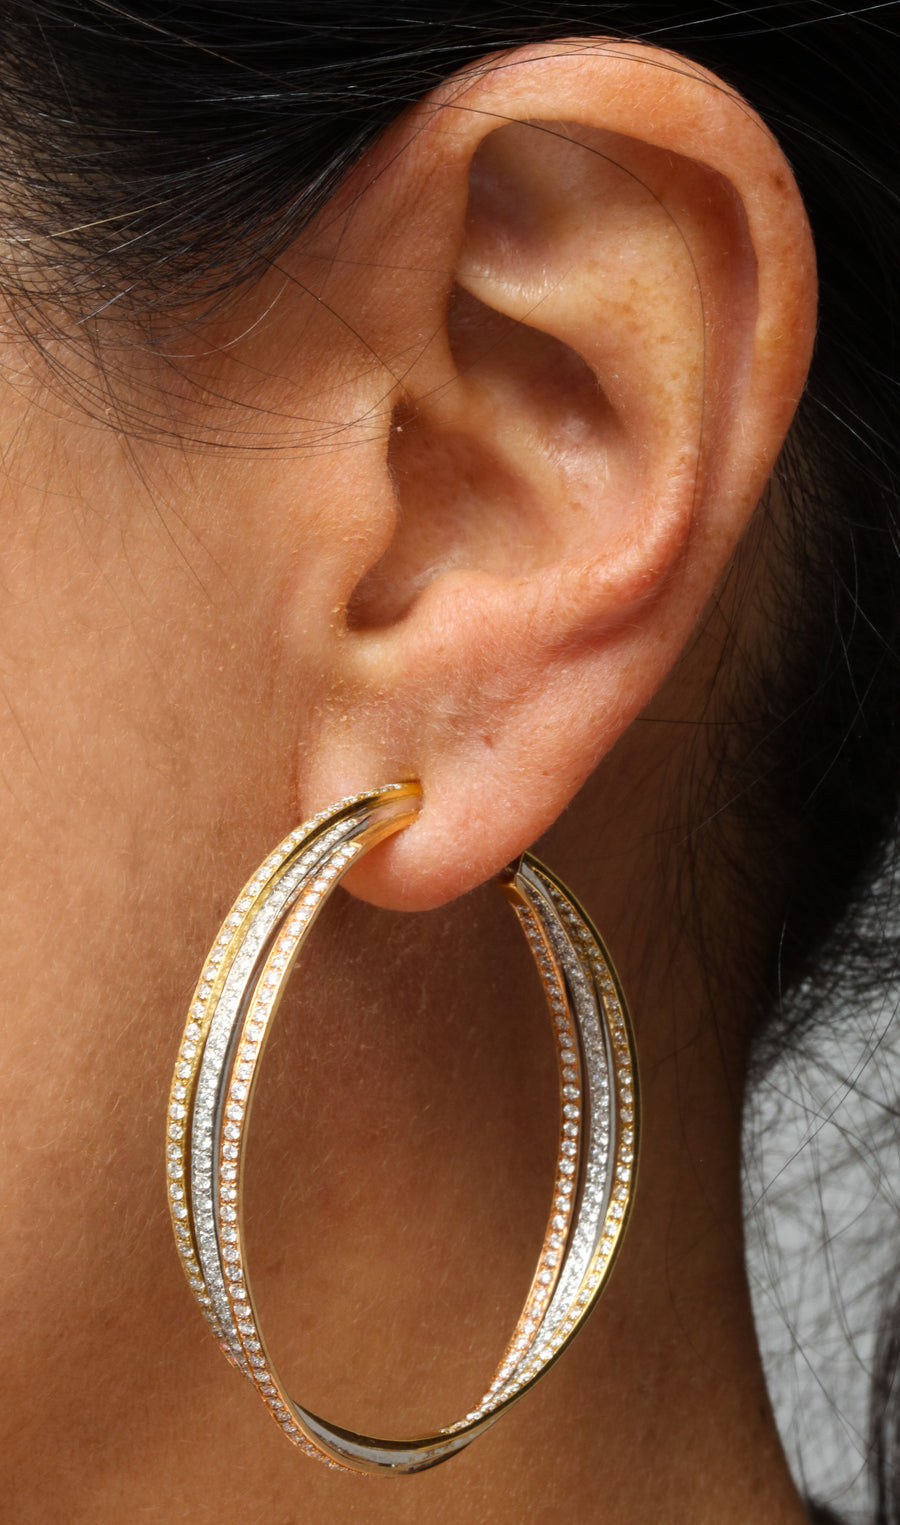 Tri-Color Gold Hoop Earrings